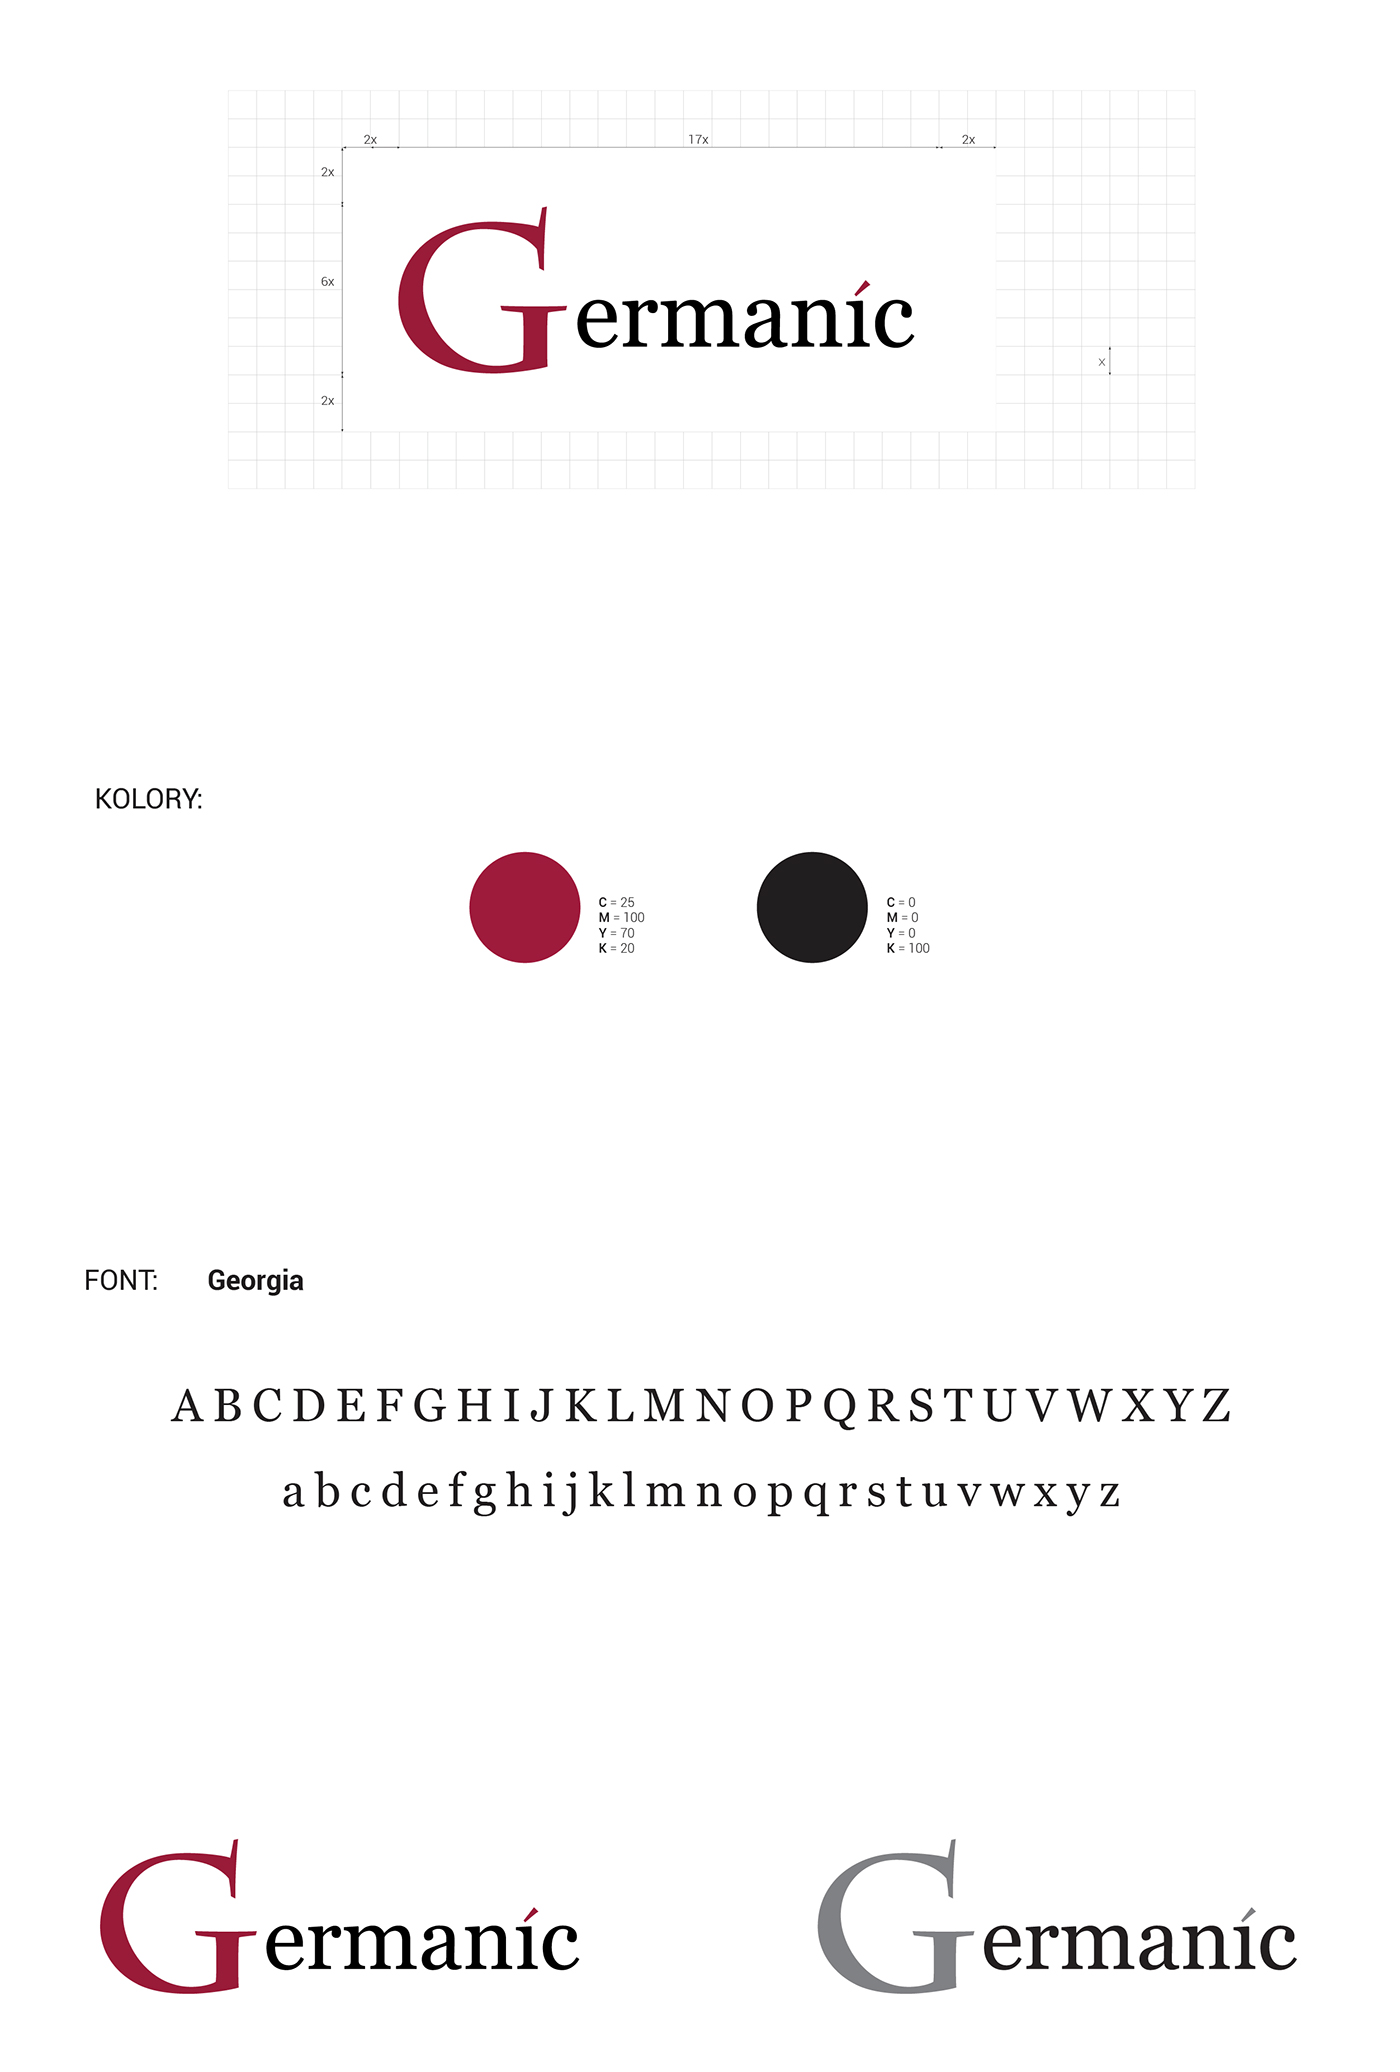 logo webside germanic